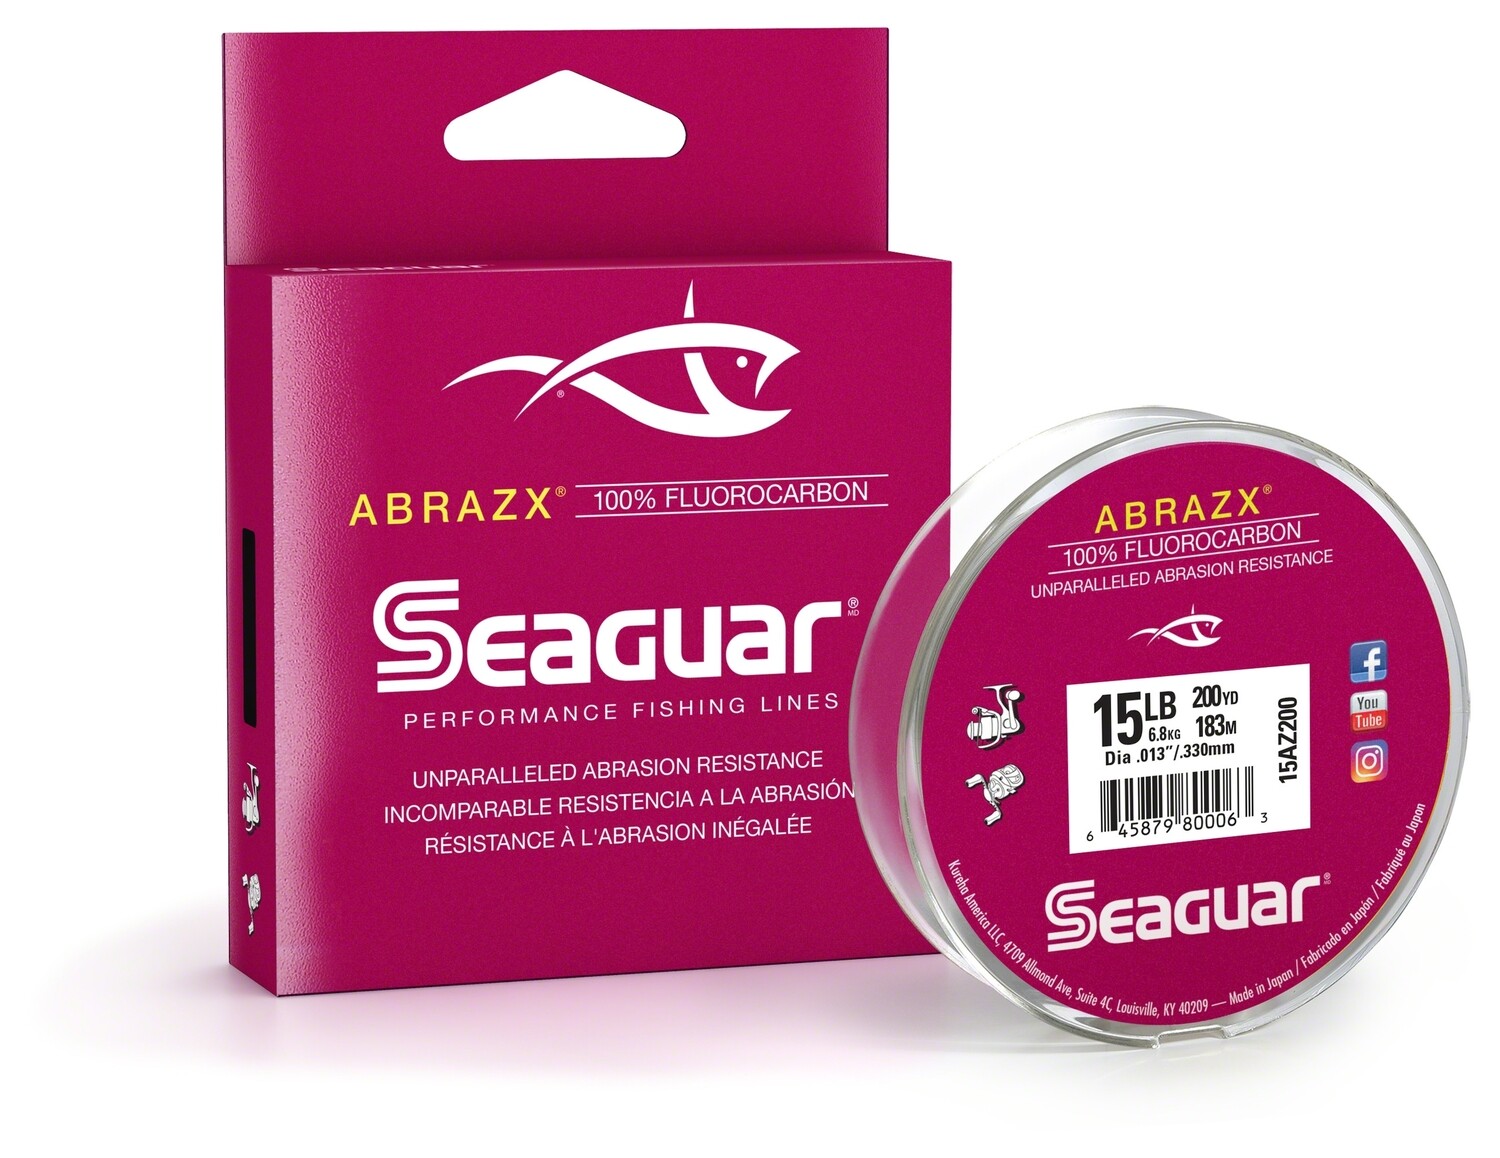 Seaguar Abrazx 8lb 100% Fluorocarbon 200yd